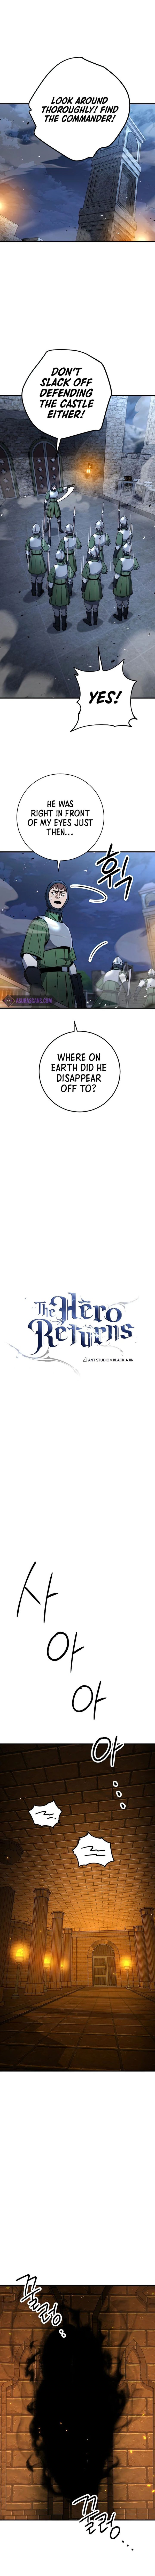 The Hero Returns 31 1